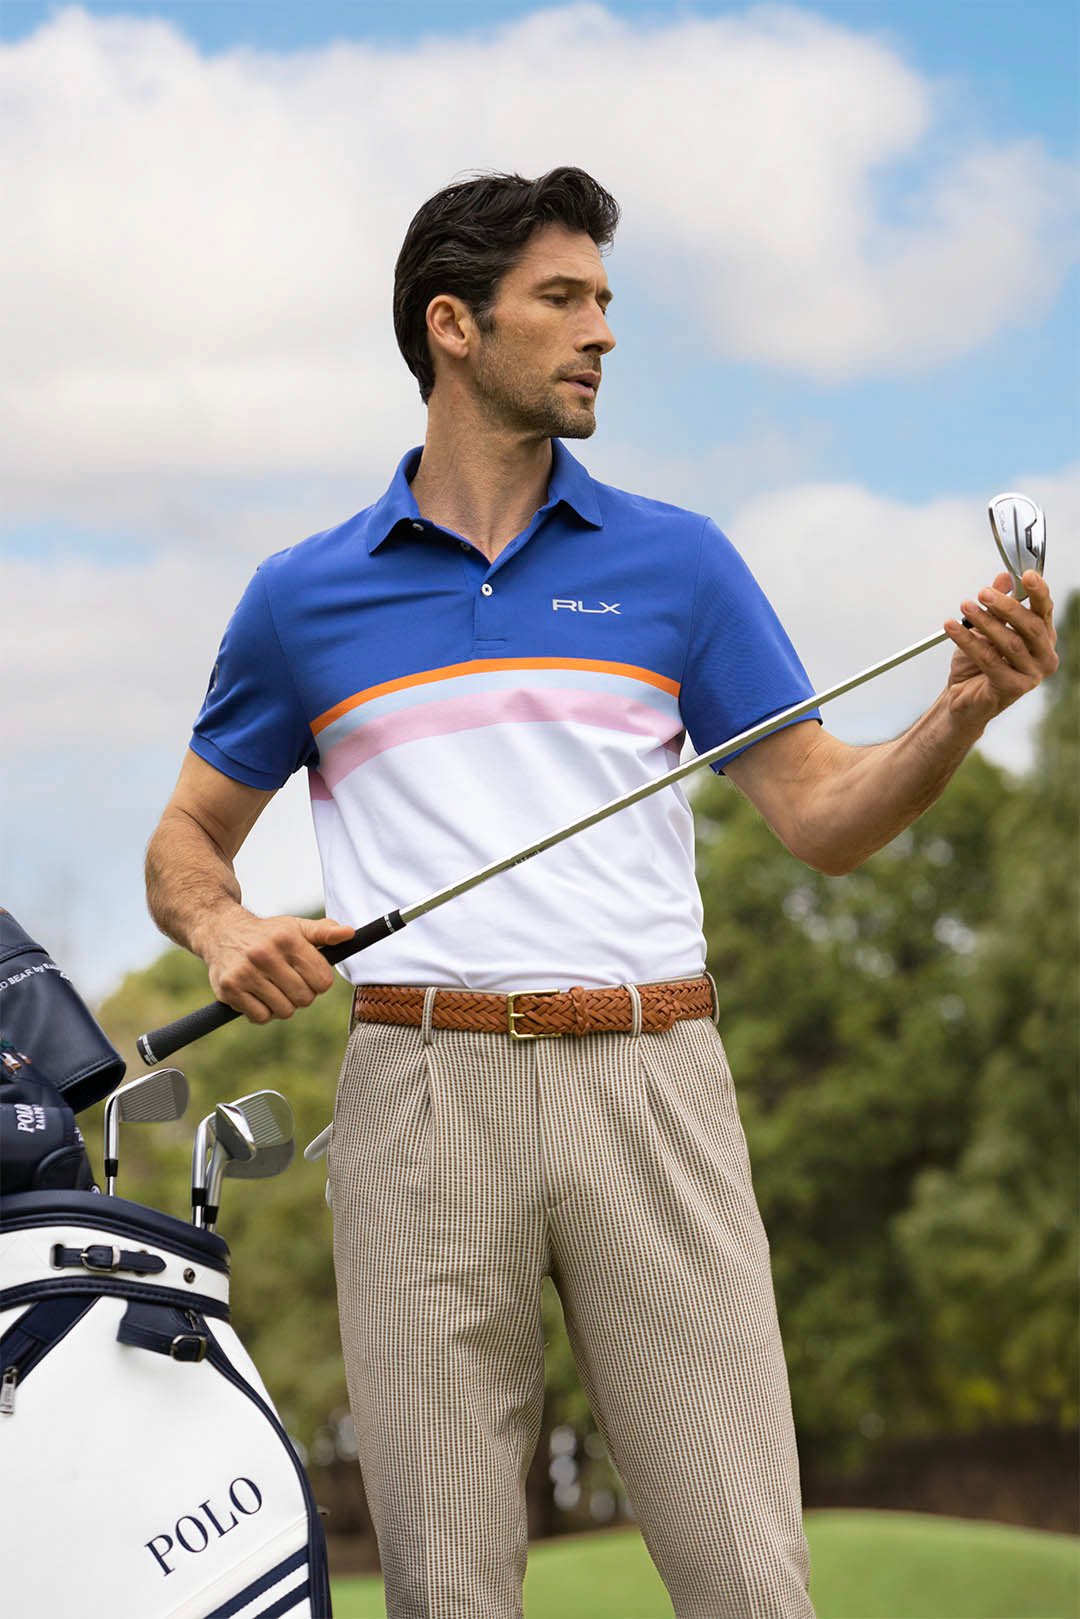 ゴルフウェアを着た男性モデル